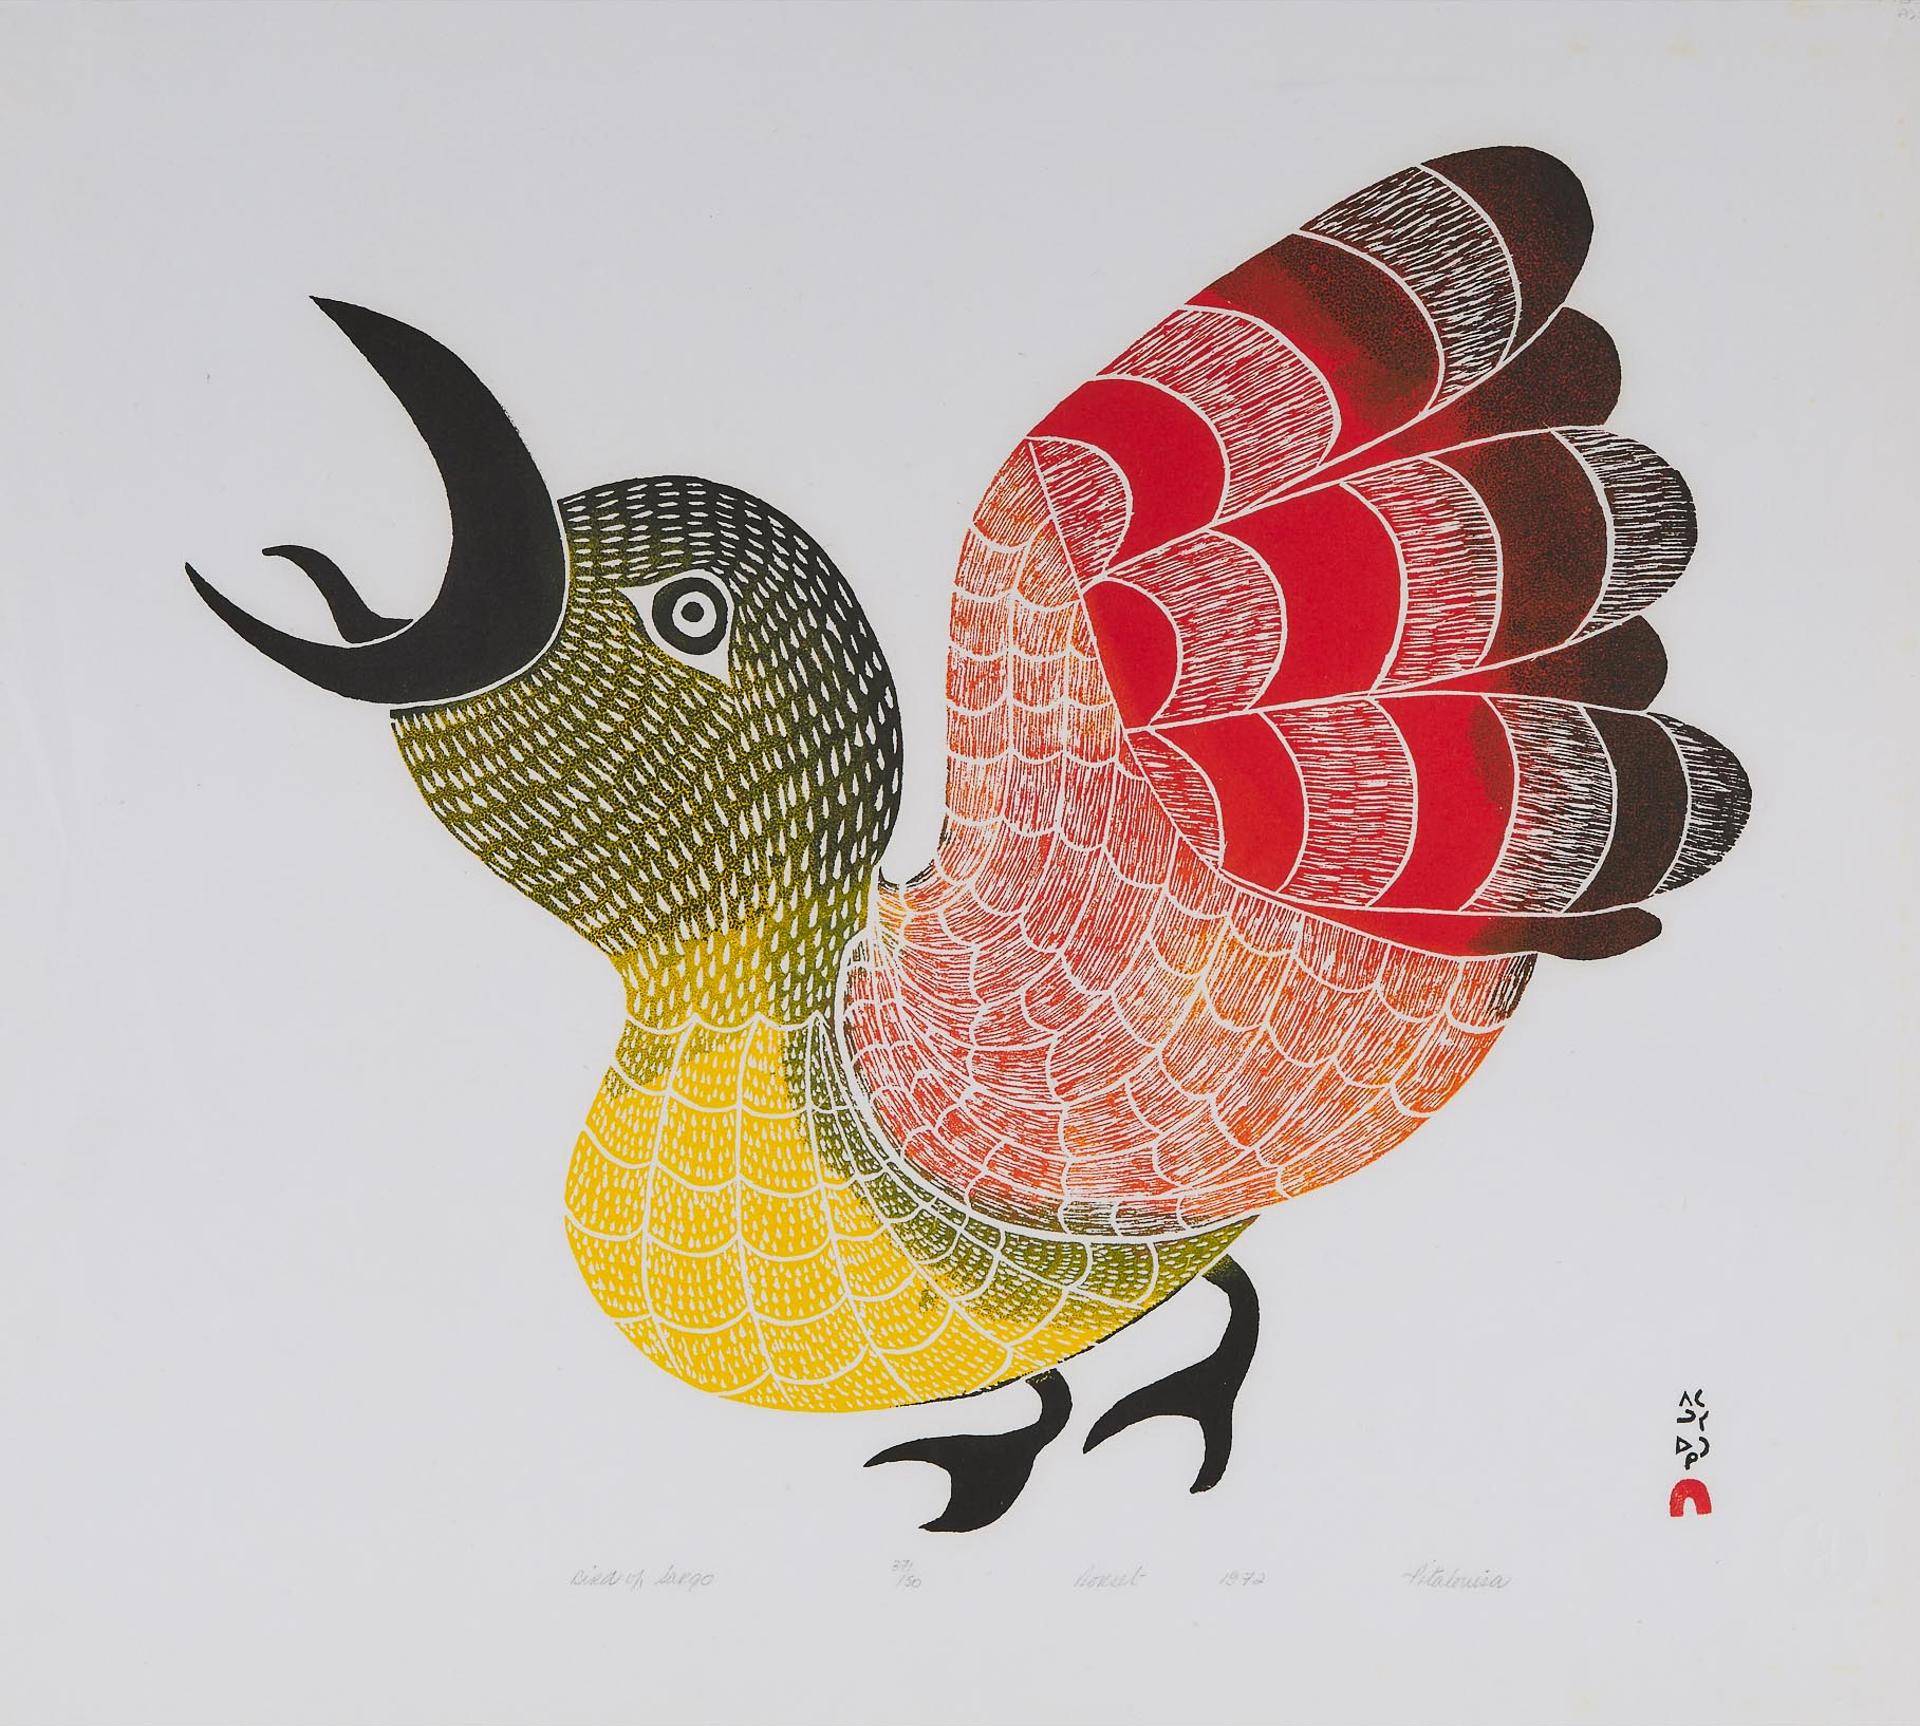 Pitaloosie Saila (1942-2021) - Bird Of Sargo, 1972